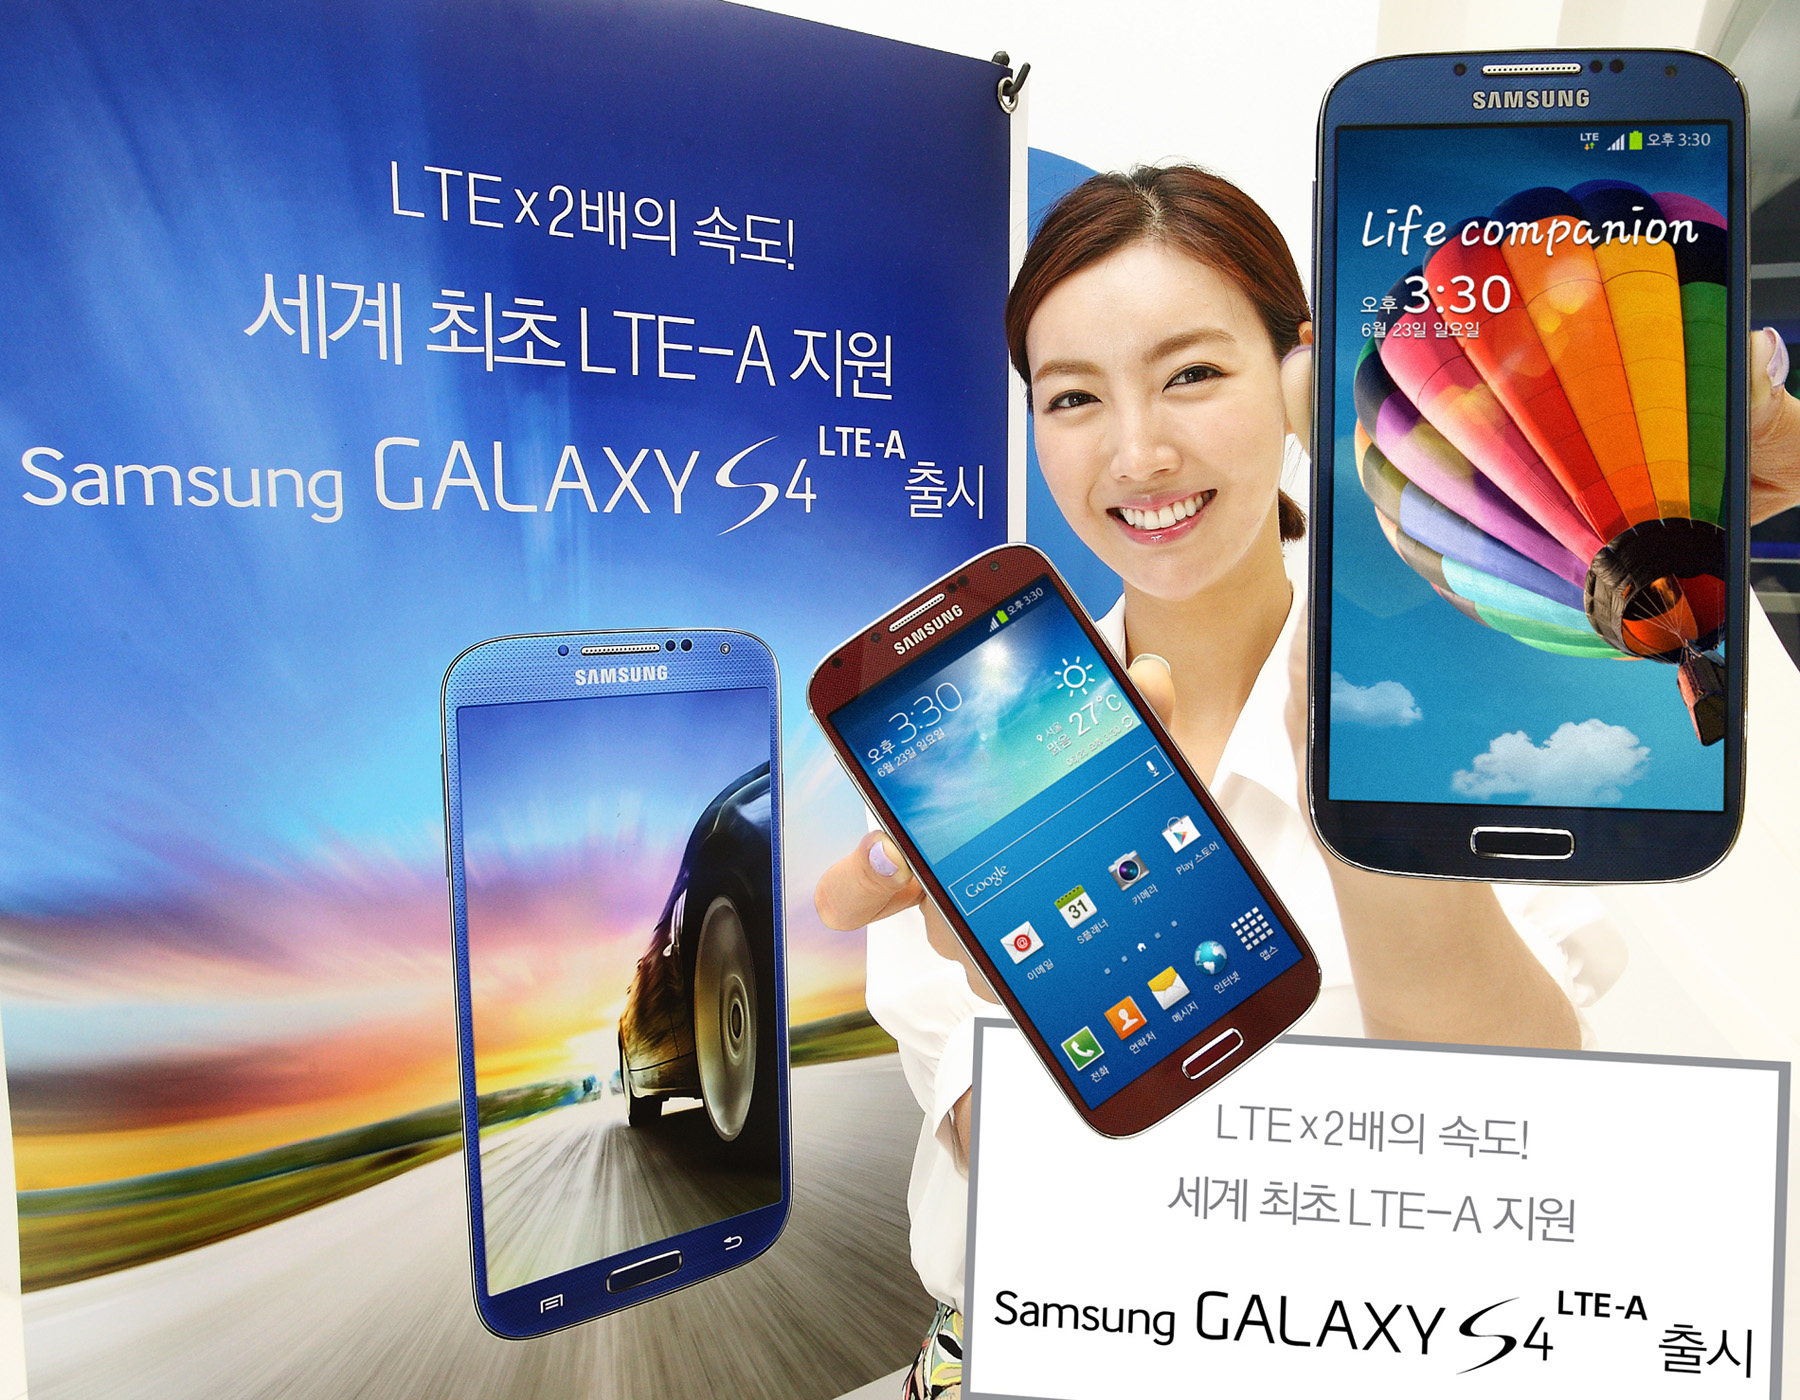 Samsung Lte